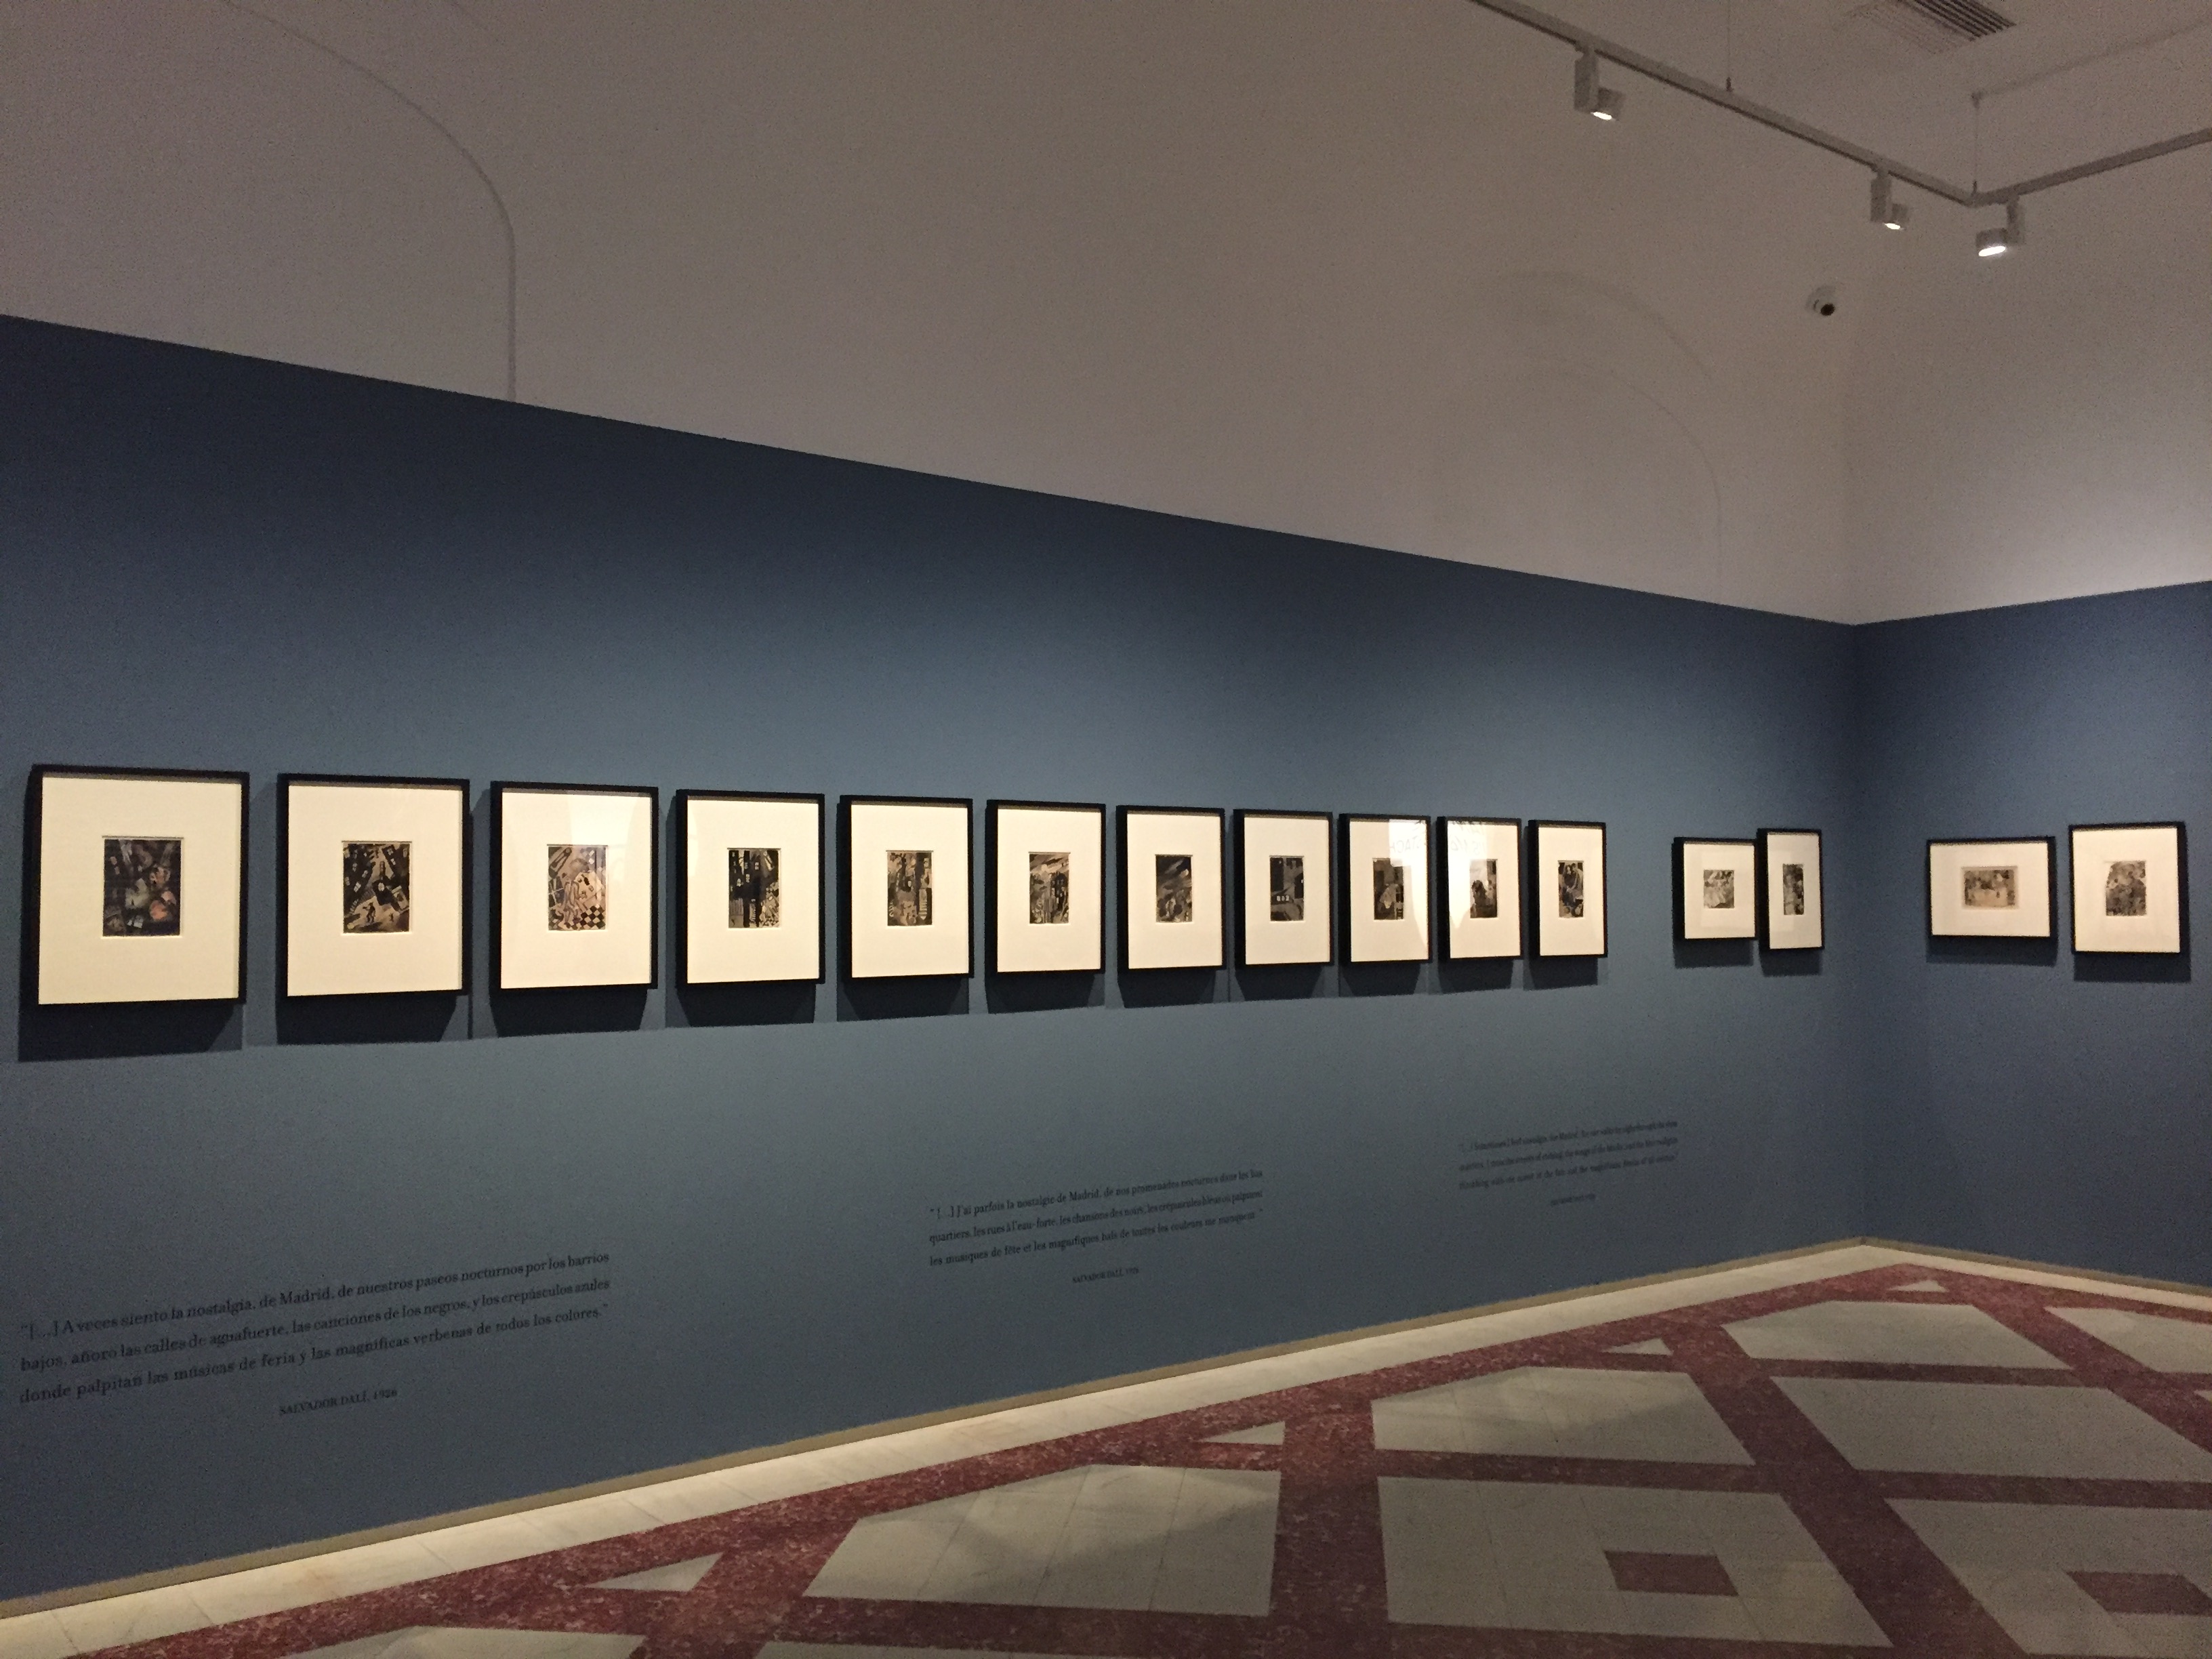 <!--:es-->Elektra Catalunya ha colaborado en el proyecto de Iluminación de la exposición temporal De sueños, paseos nocturnos y vivencias sobre Salvador Dalí y su época en la que residía en Madrid.<!--:-->